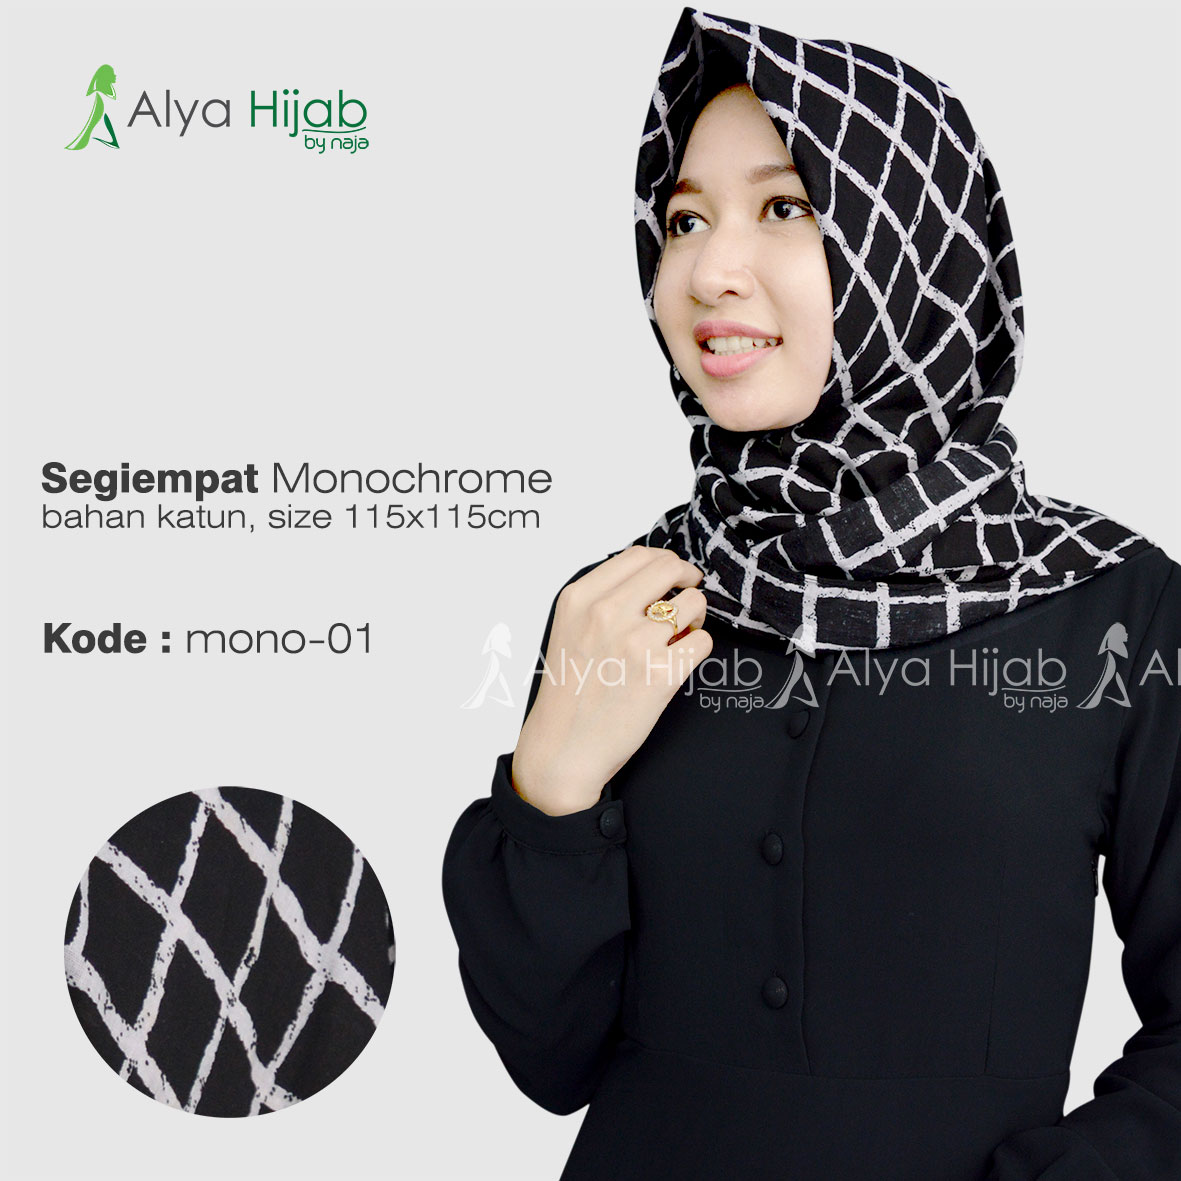 Jilbab Segiempat Dan Fasmina Monochrome Alya Hijab By Naja Jual